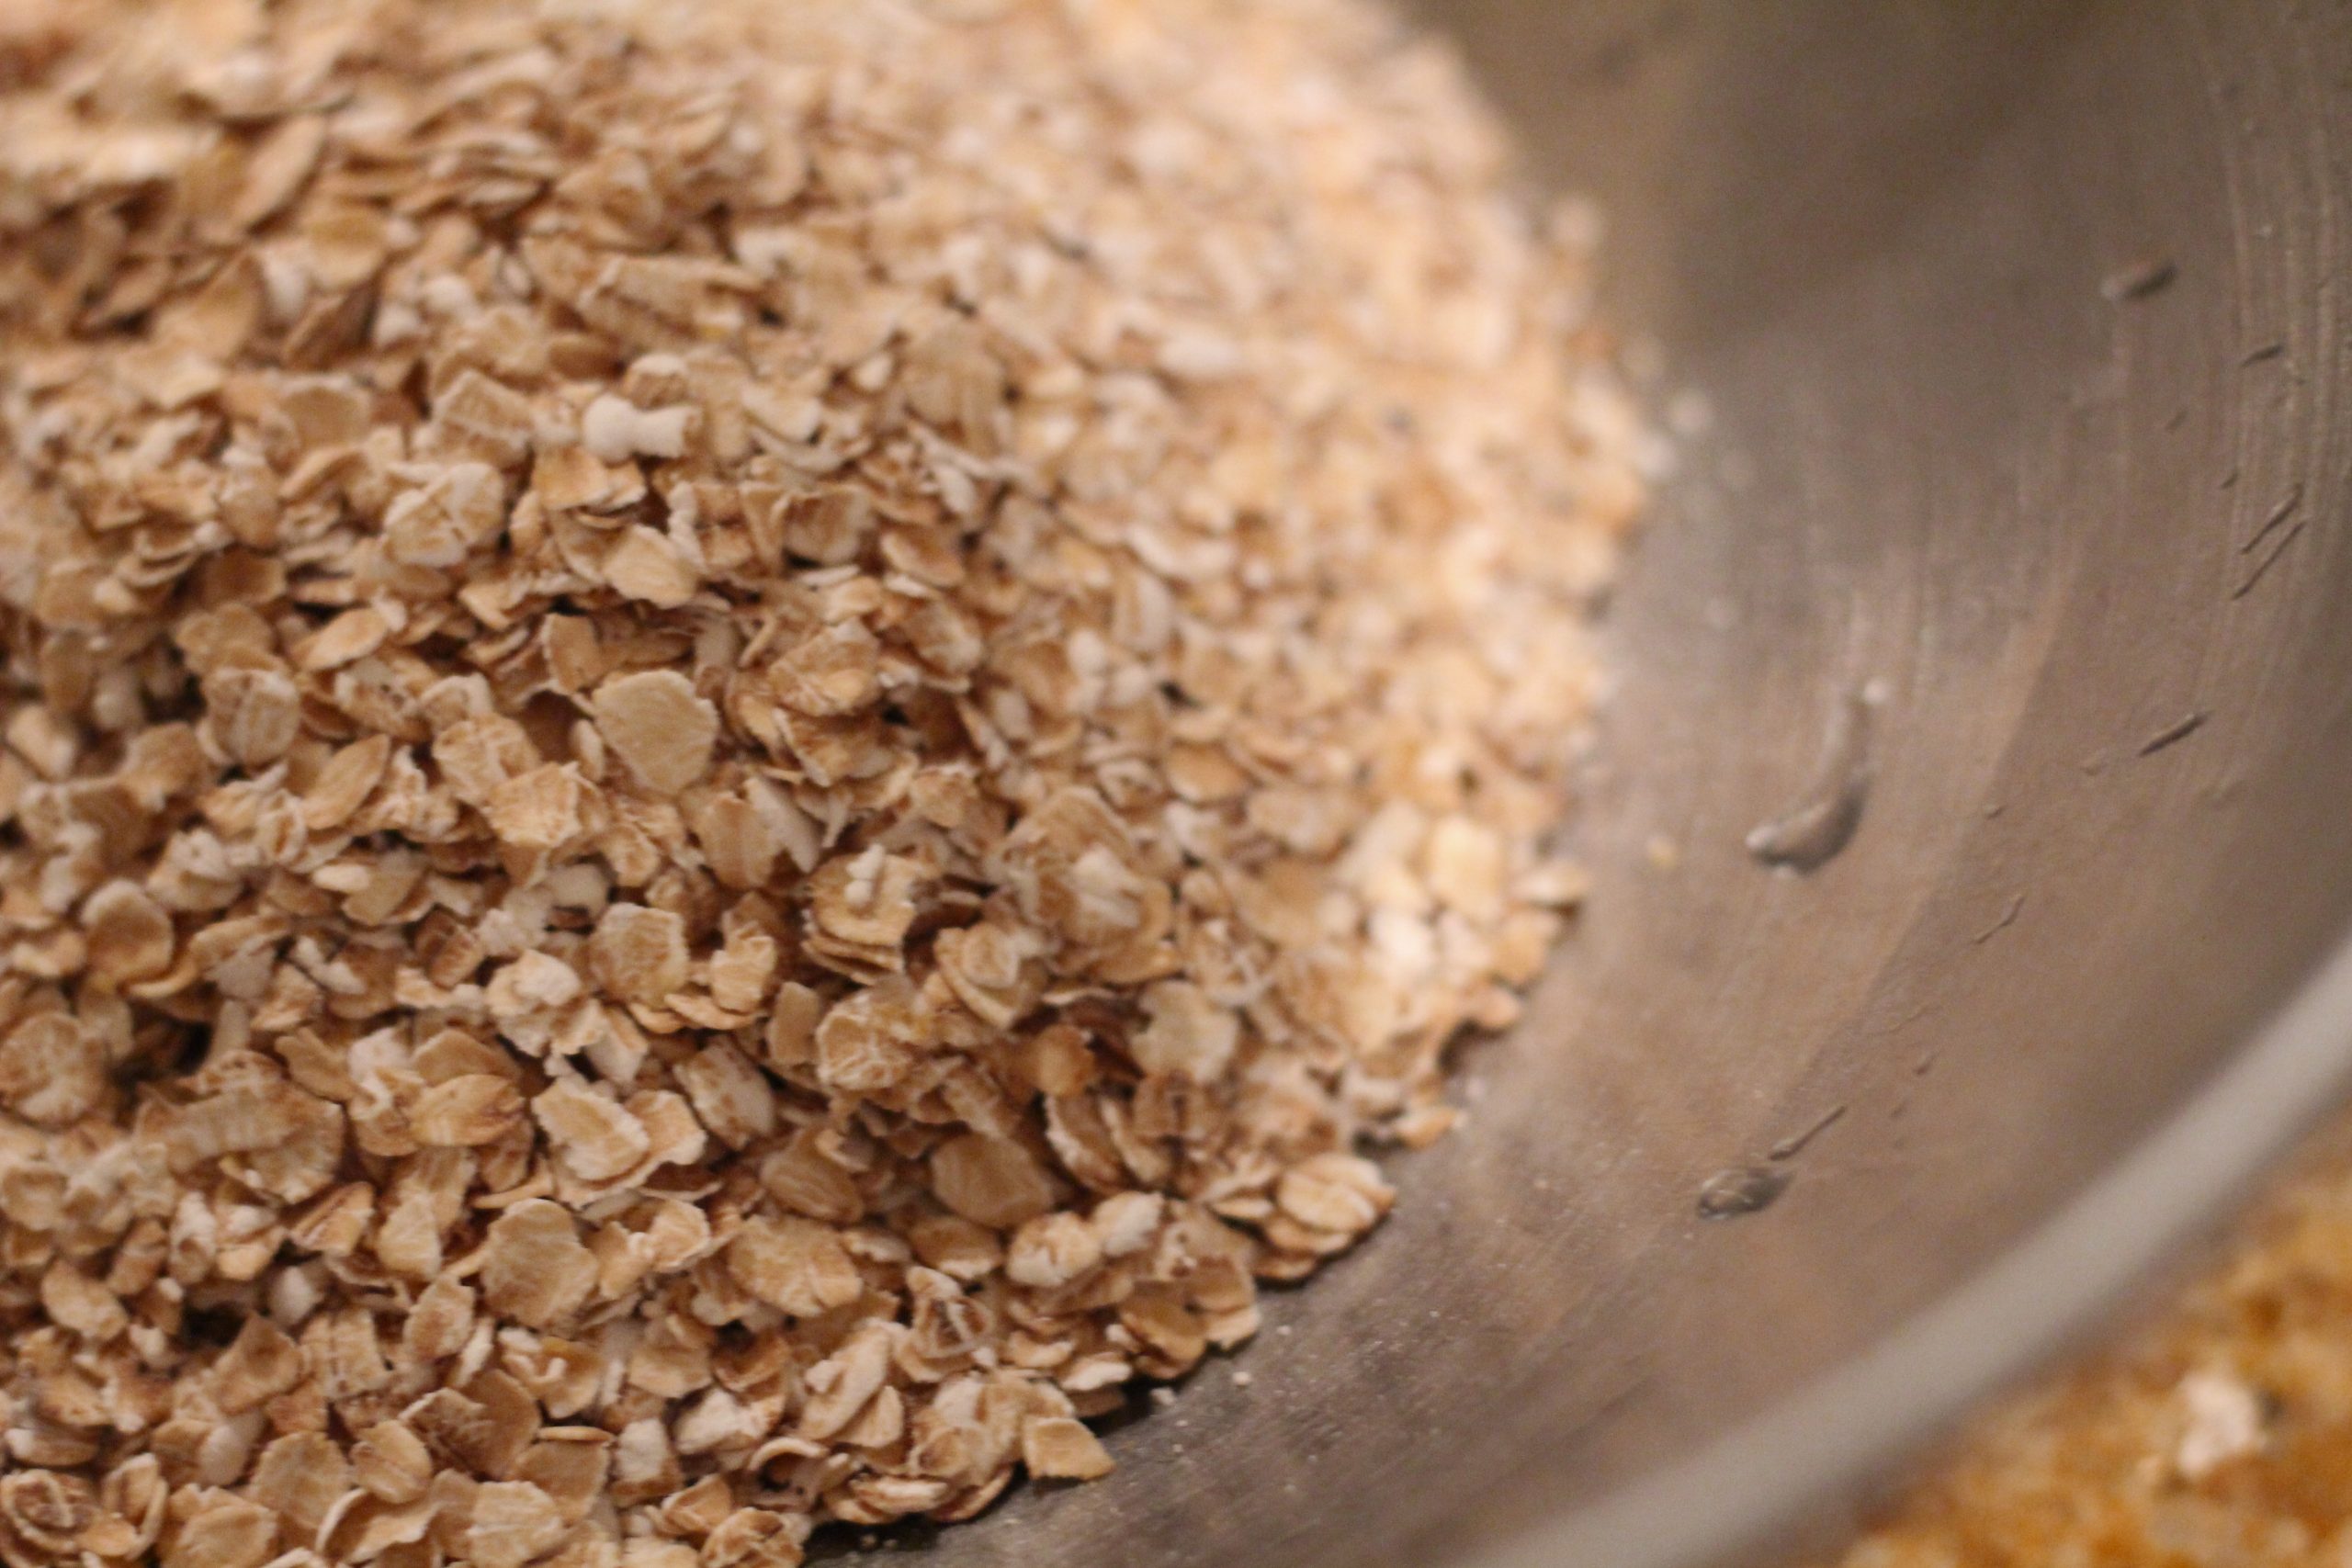 oats in bowl